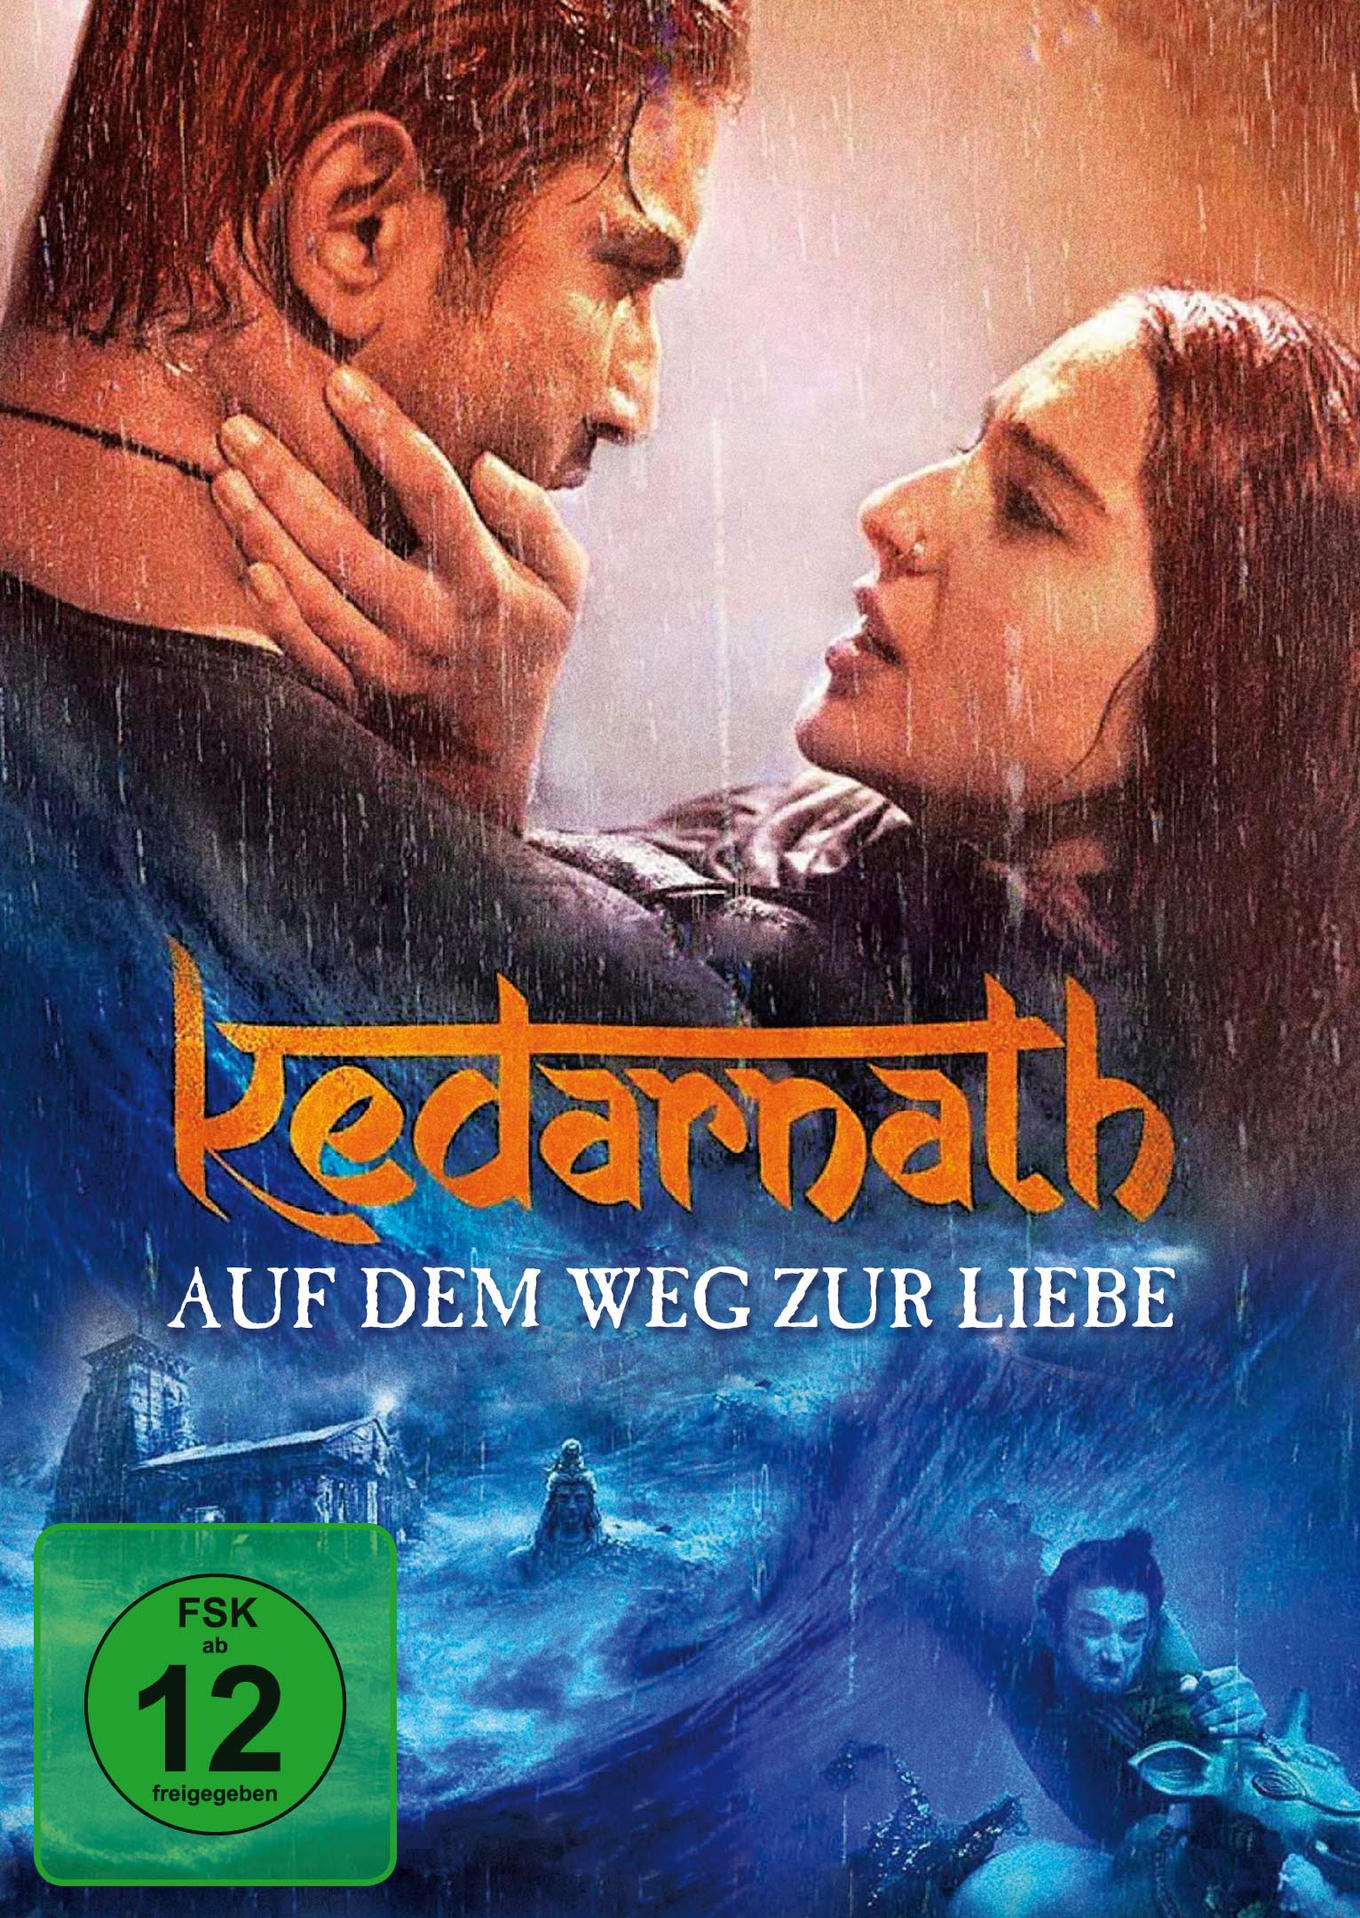 Auf Liebe - zur Weg DVD dem Kedarnath